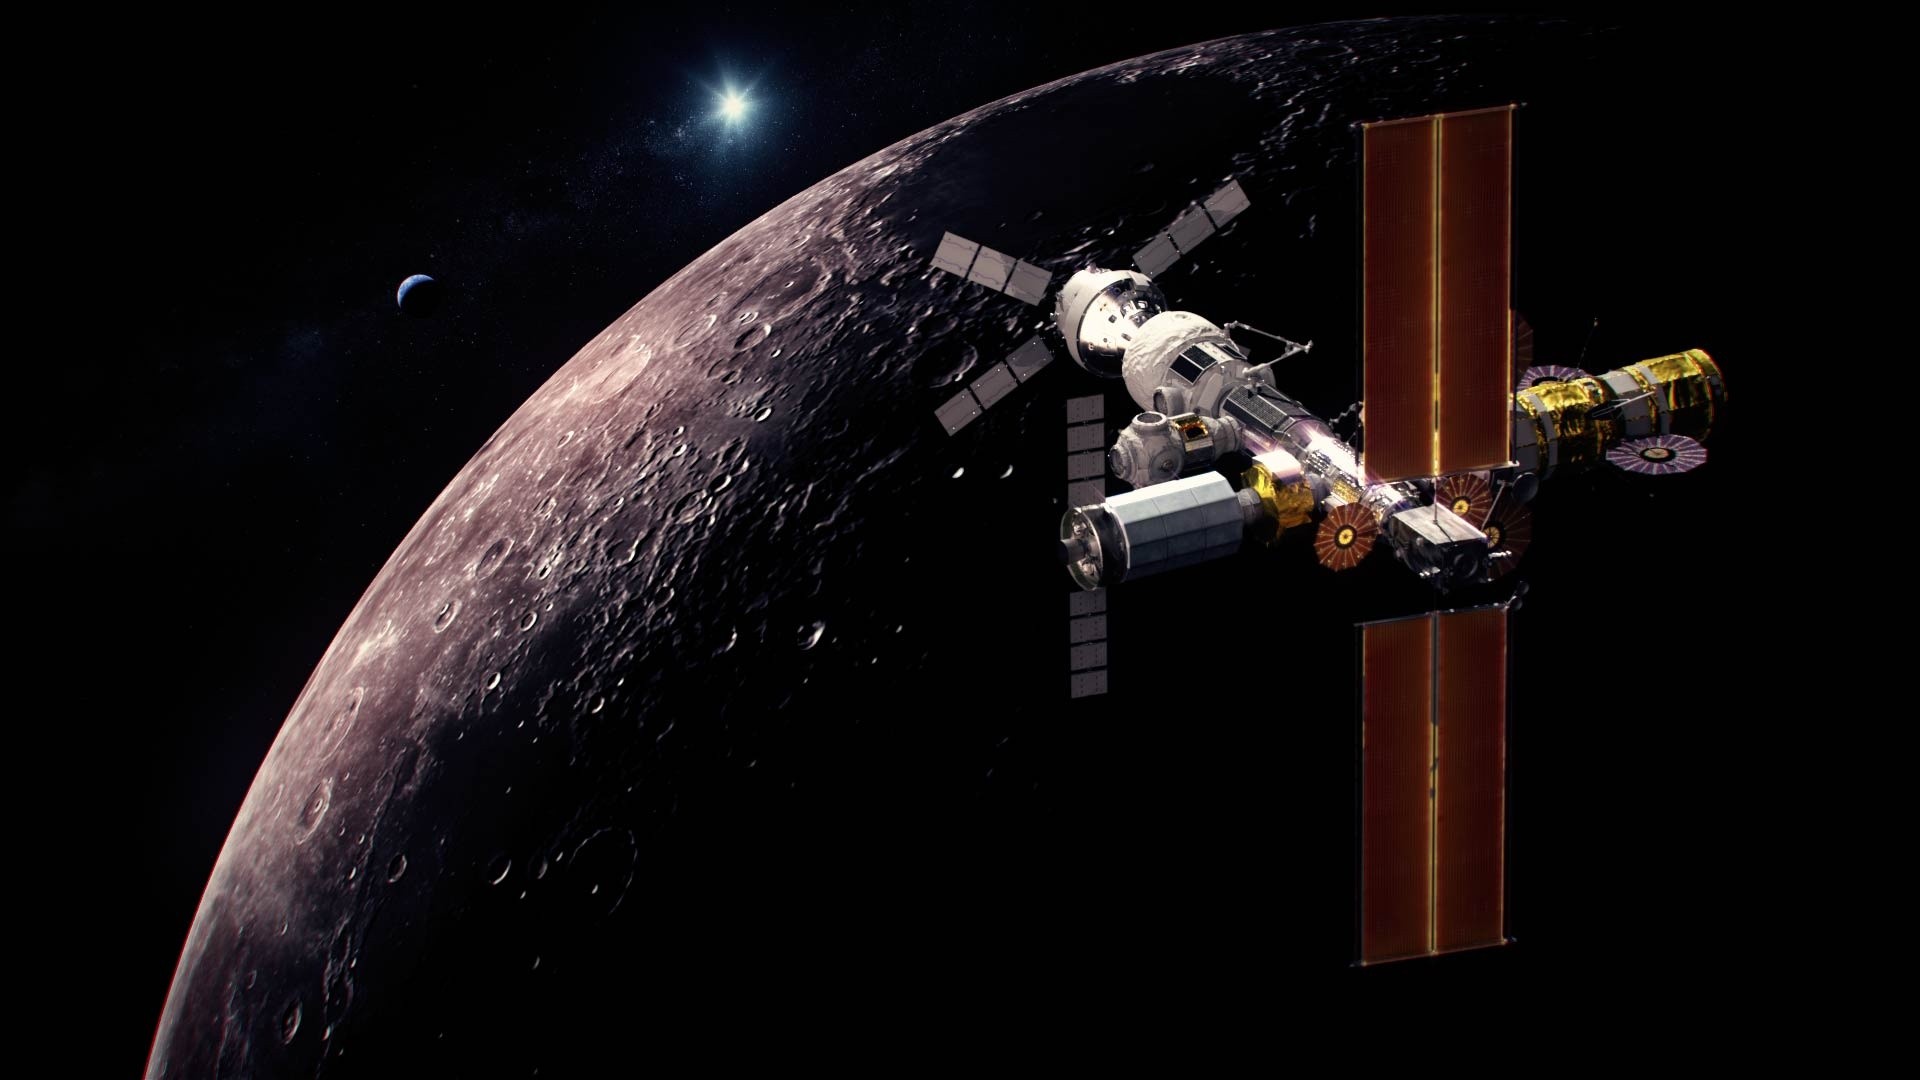 Canadá planeja lançamento de rover à Lua até 2026. Acima, uma representaçã artística do Canadarm3, o sistema robótico inteligente do Canadá que será instalado na externa do Gateway, uma pequena estação espacial em órbita ao redor da Lua a ser construída pela Nasa.  (Foto: Canadian Space Agency (CSA), Nasa)